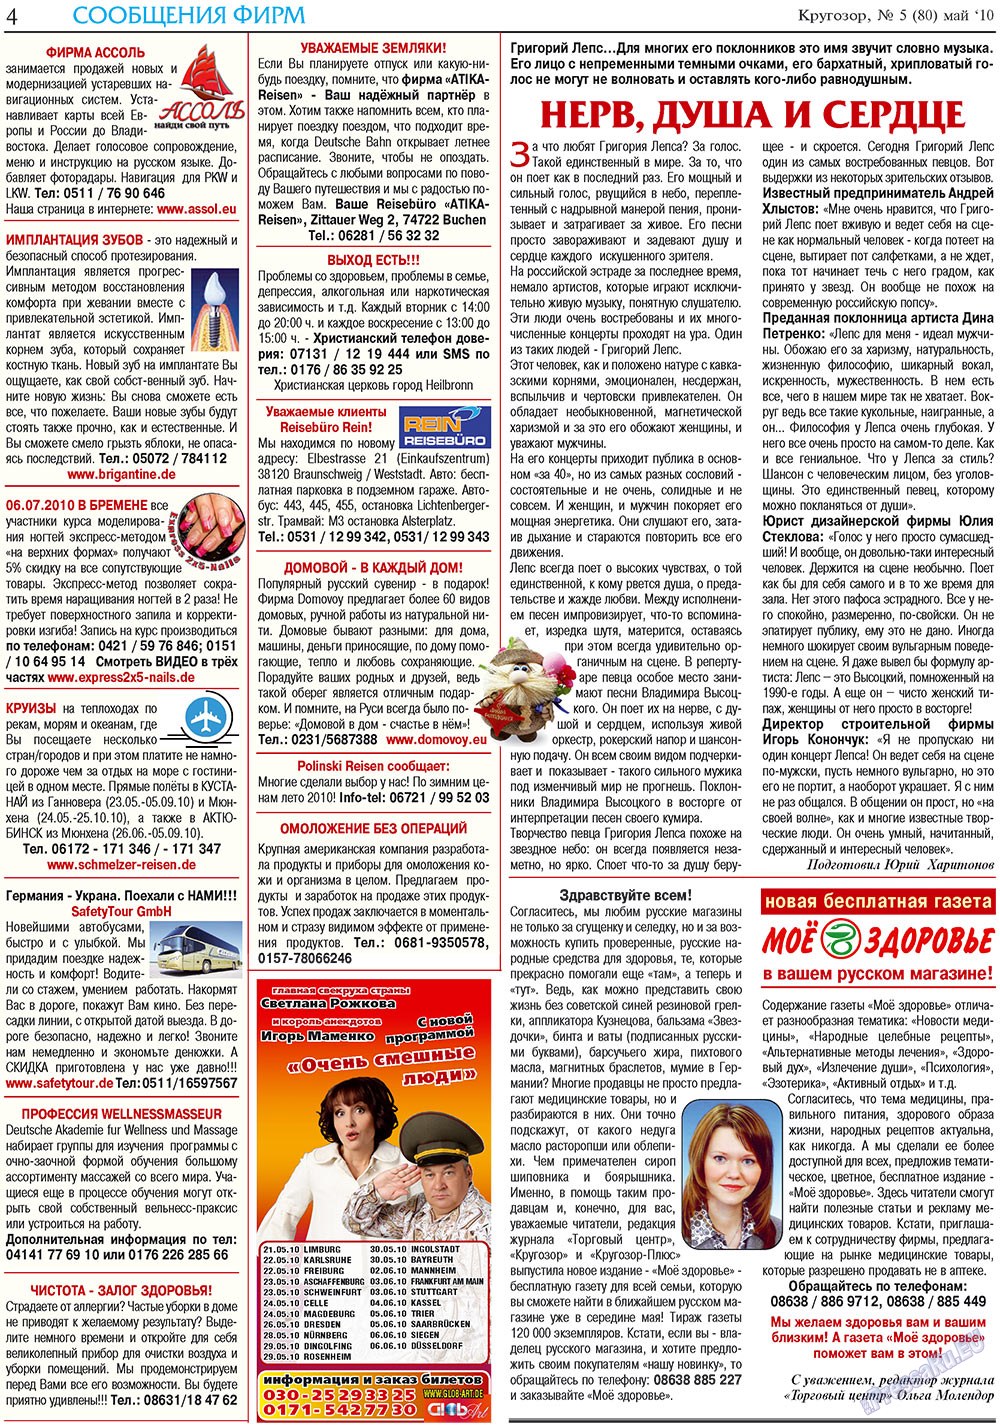 Кругозор плюс!, газета. 2010 №5 стр.4